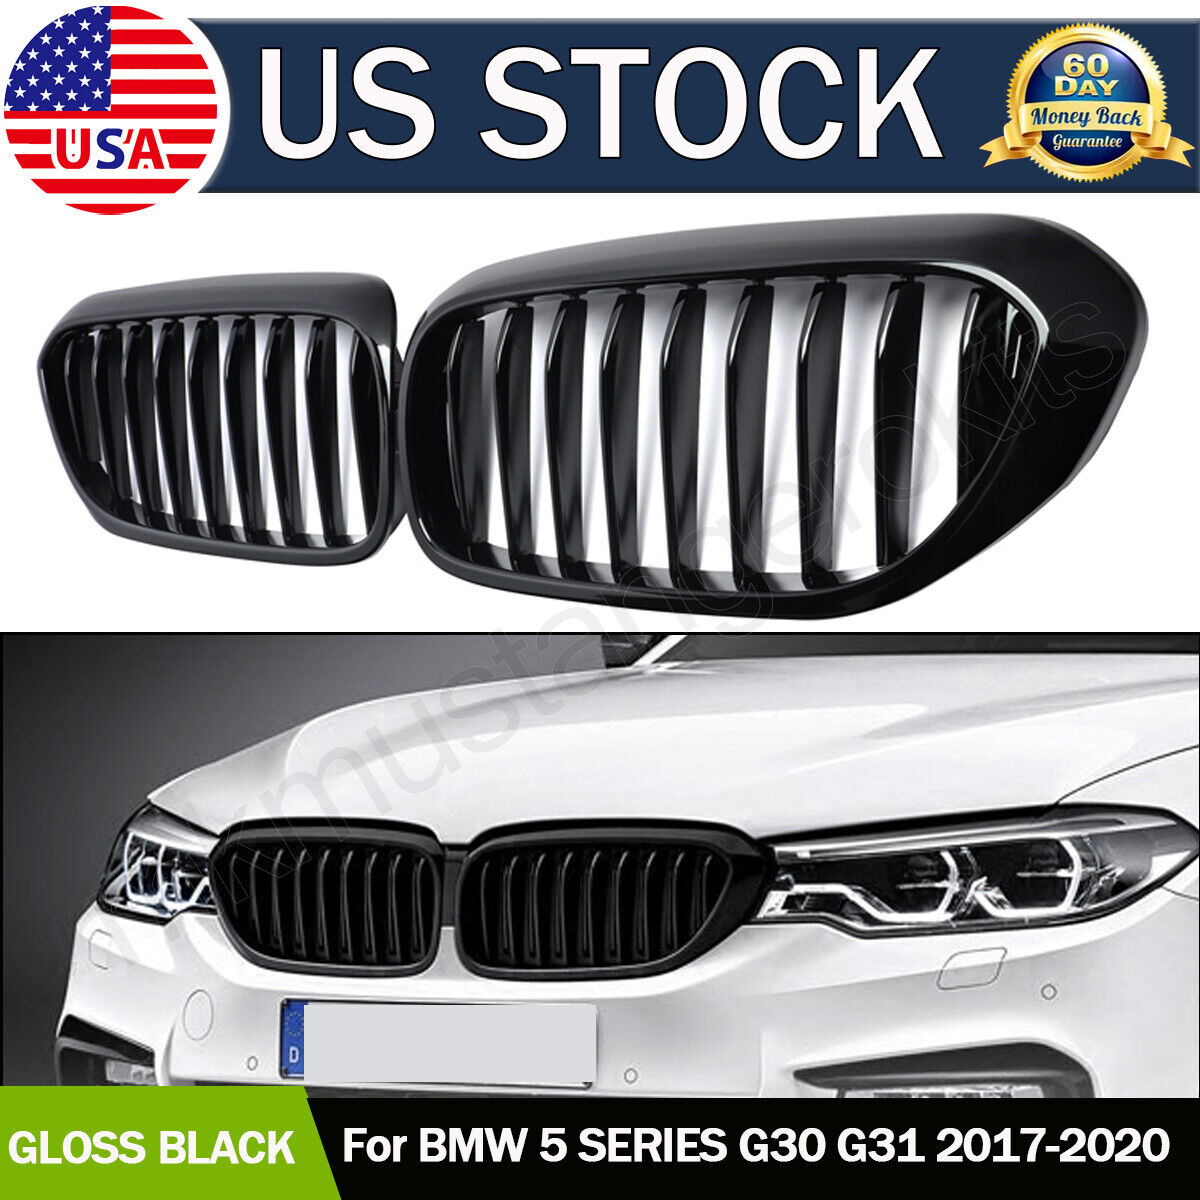 Shiny Black Front Kidney Grilles Grills For BMW G30 G31 5-Series 530i 540i 17-20